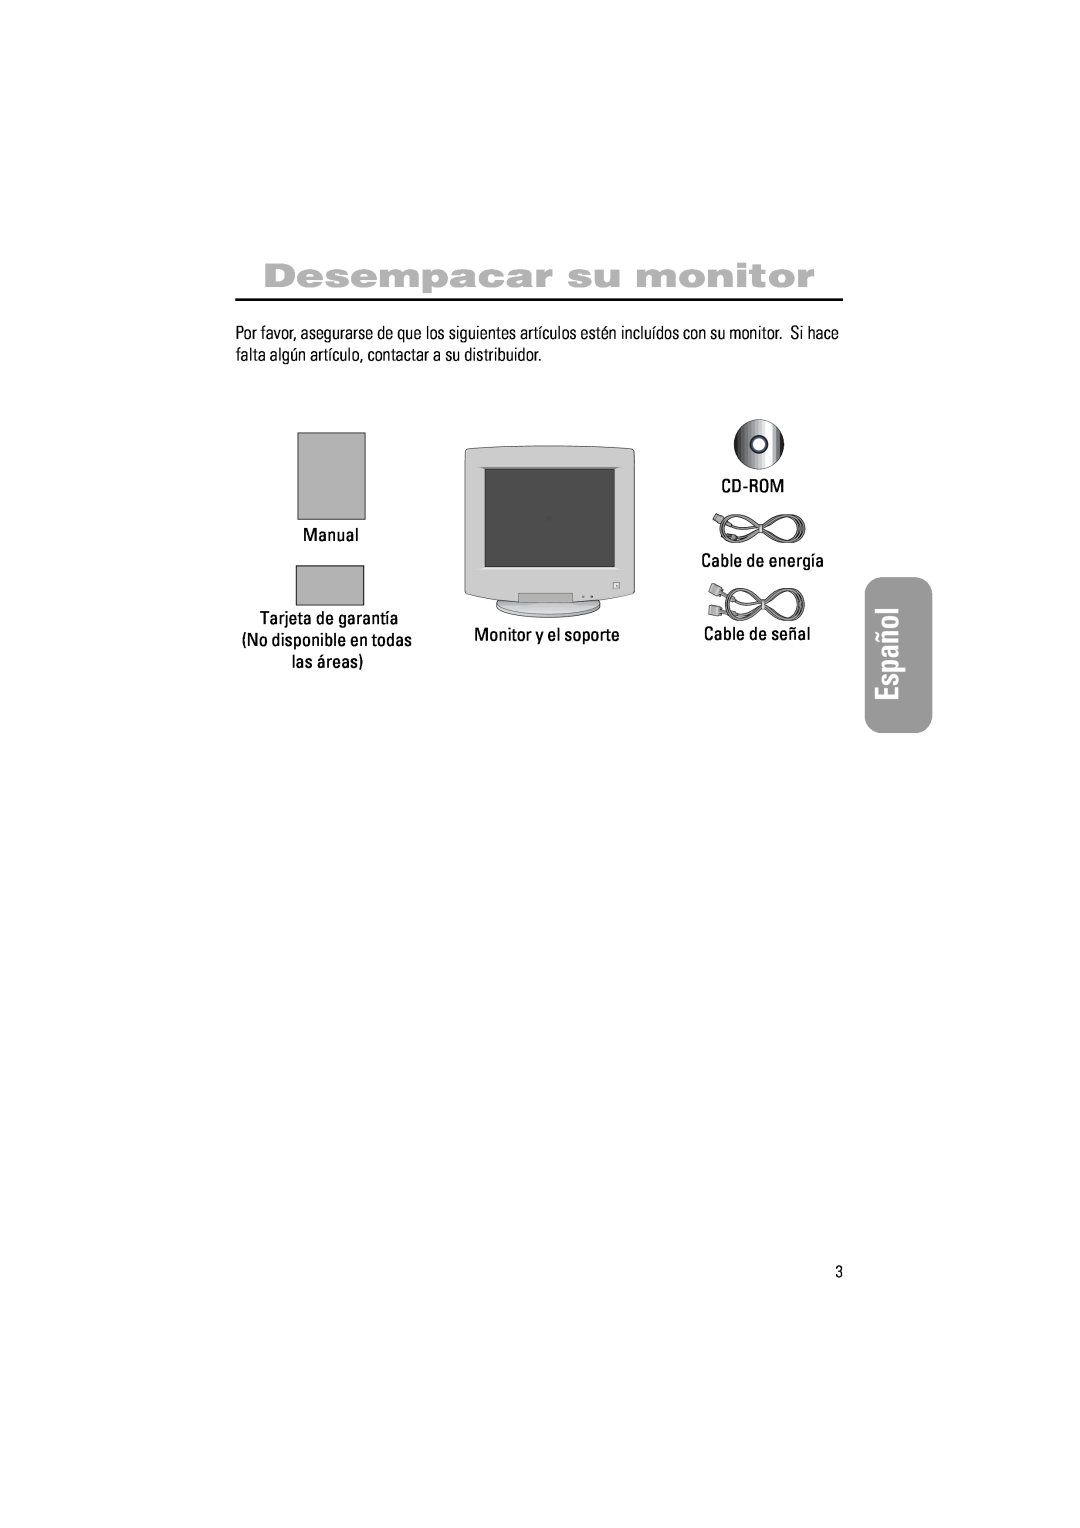 Samsung PG17IS manual Desempacar su monitor, Español, Cd-Rom, Monitor y el soporte, Cable de señal, No disponible en todas 